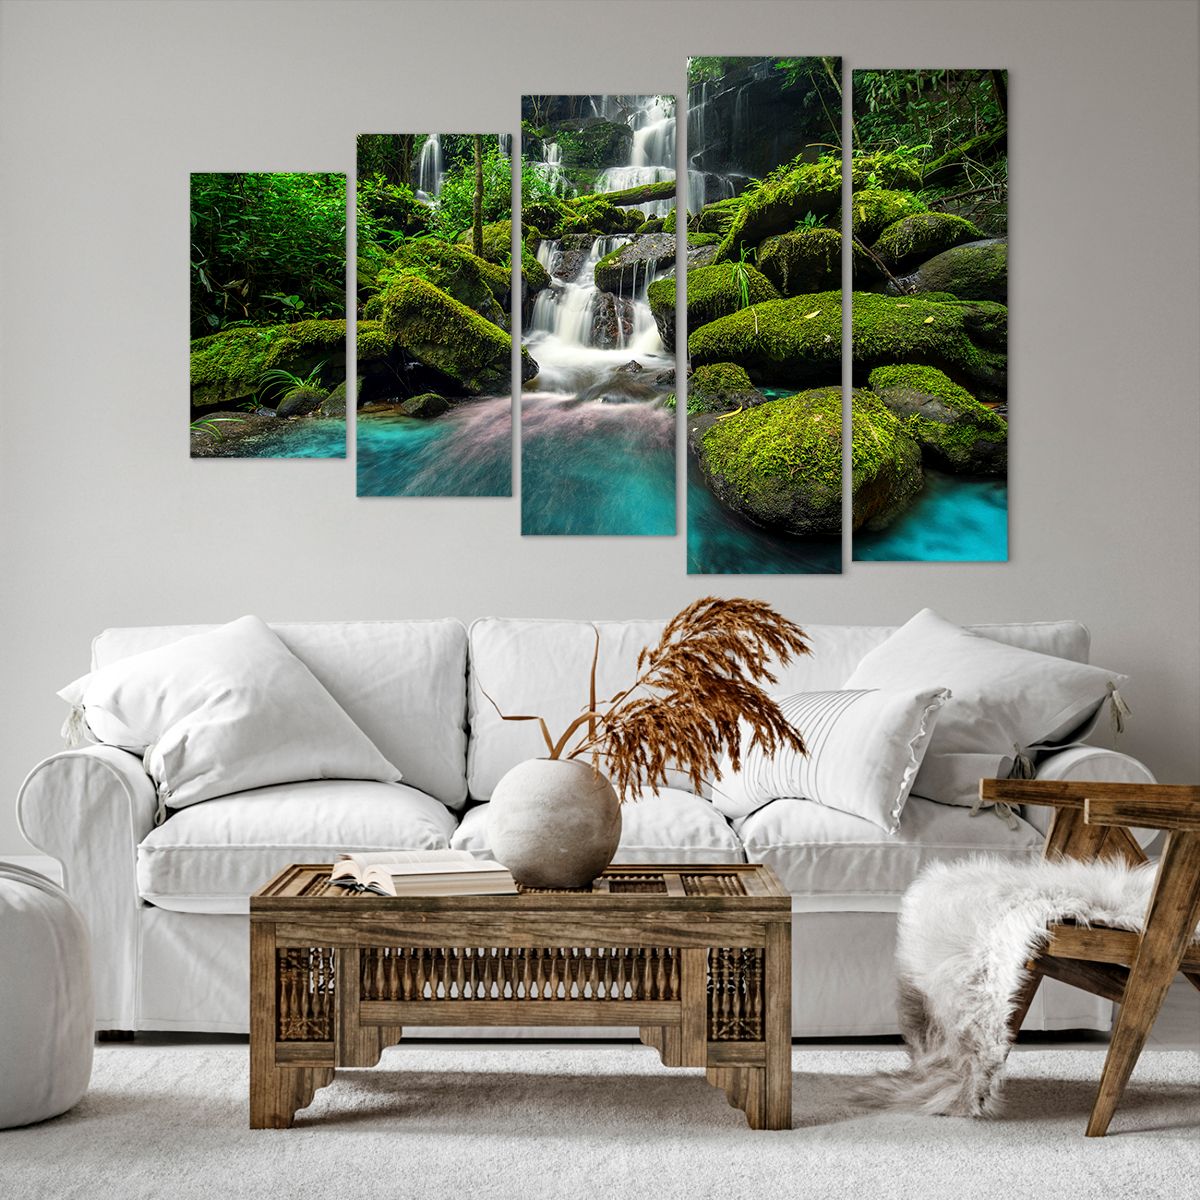 Bild auf Leinwand Landschaft, Bild auf Leinwand Wasserfall, Bild auf Leinwand Gebirgsbach, Bild auf Leinwand Wald, Bild auf Leinwand Natur